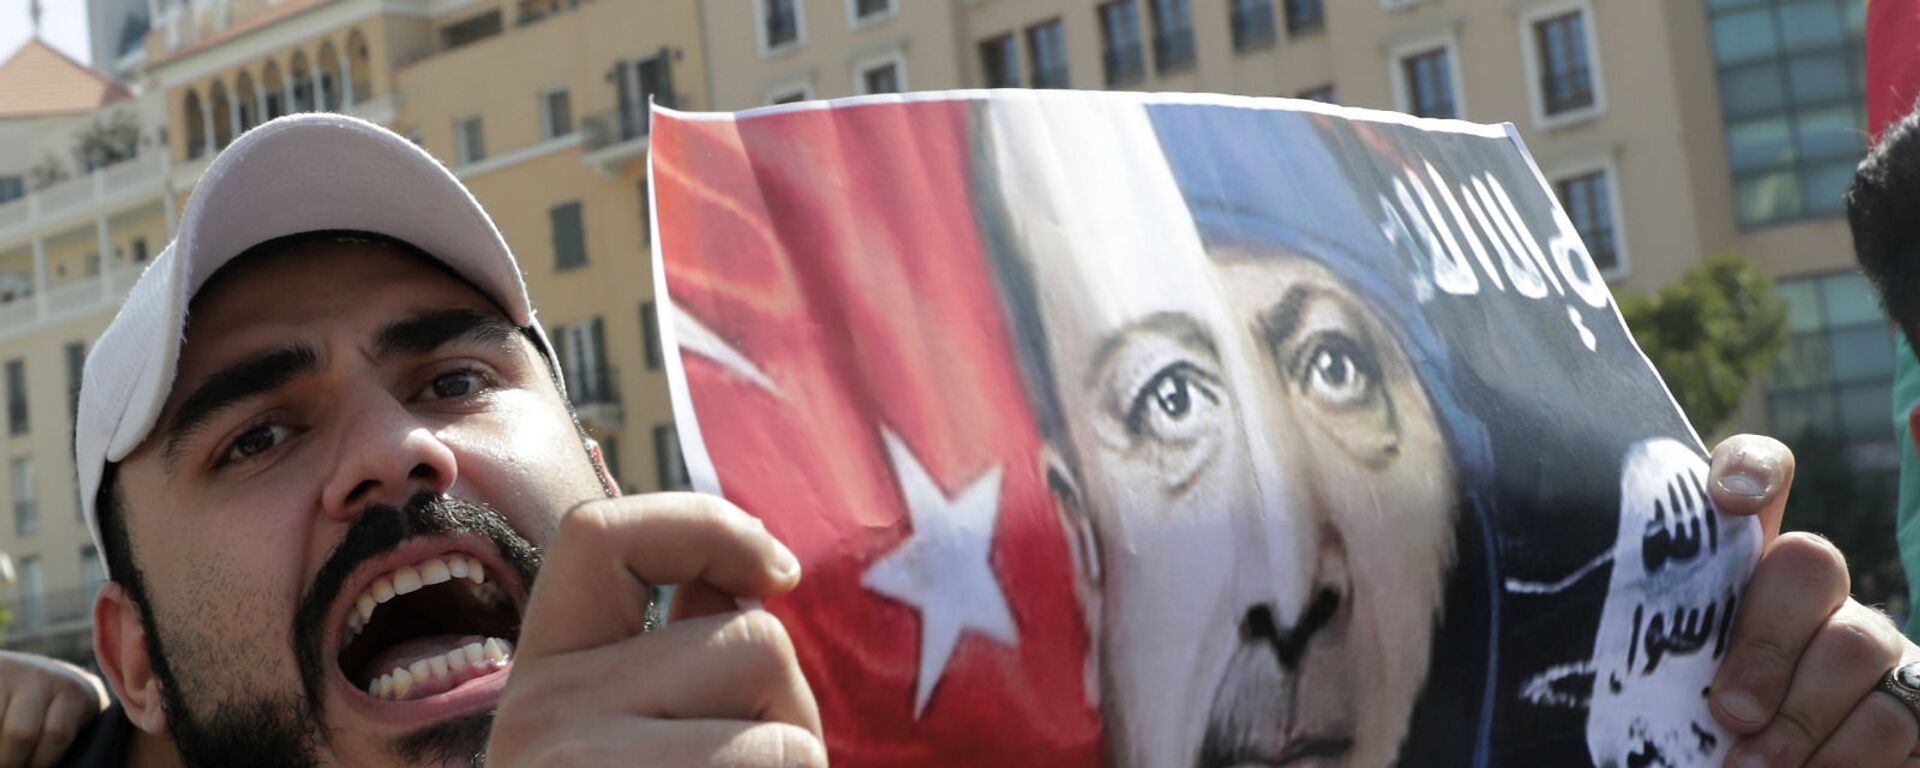 Курдский протестующий держит плакат с портретом президента Турции Реджепа Тайипа Эрдогана во время демонстрации (13 октября 2019).  Бейрут - Sputnik Армения, 1920, 12.07.2020